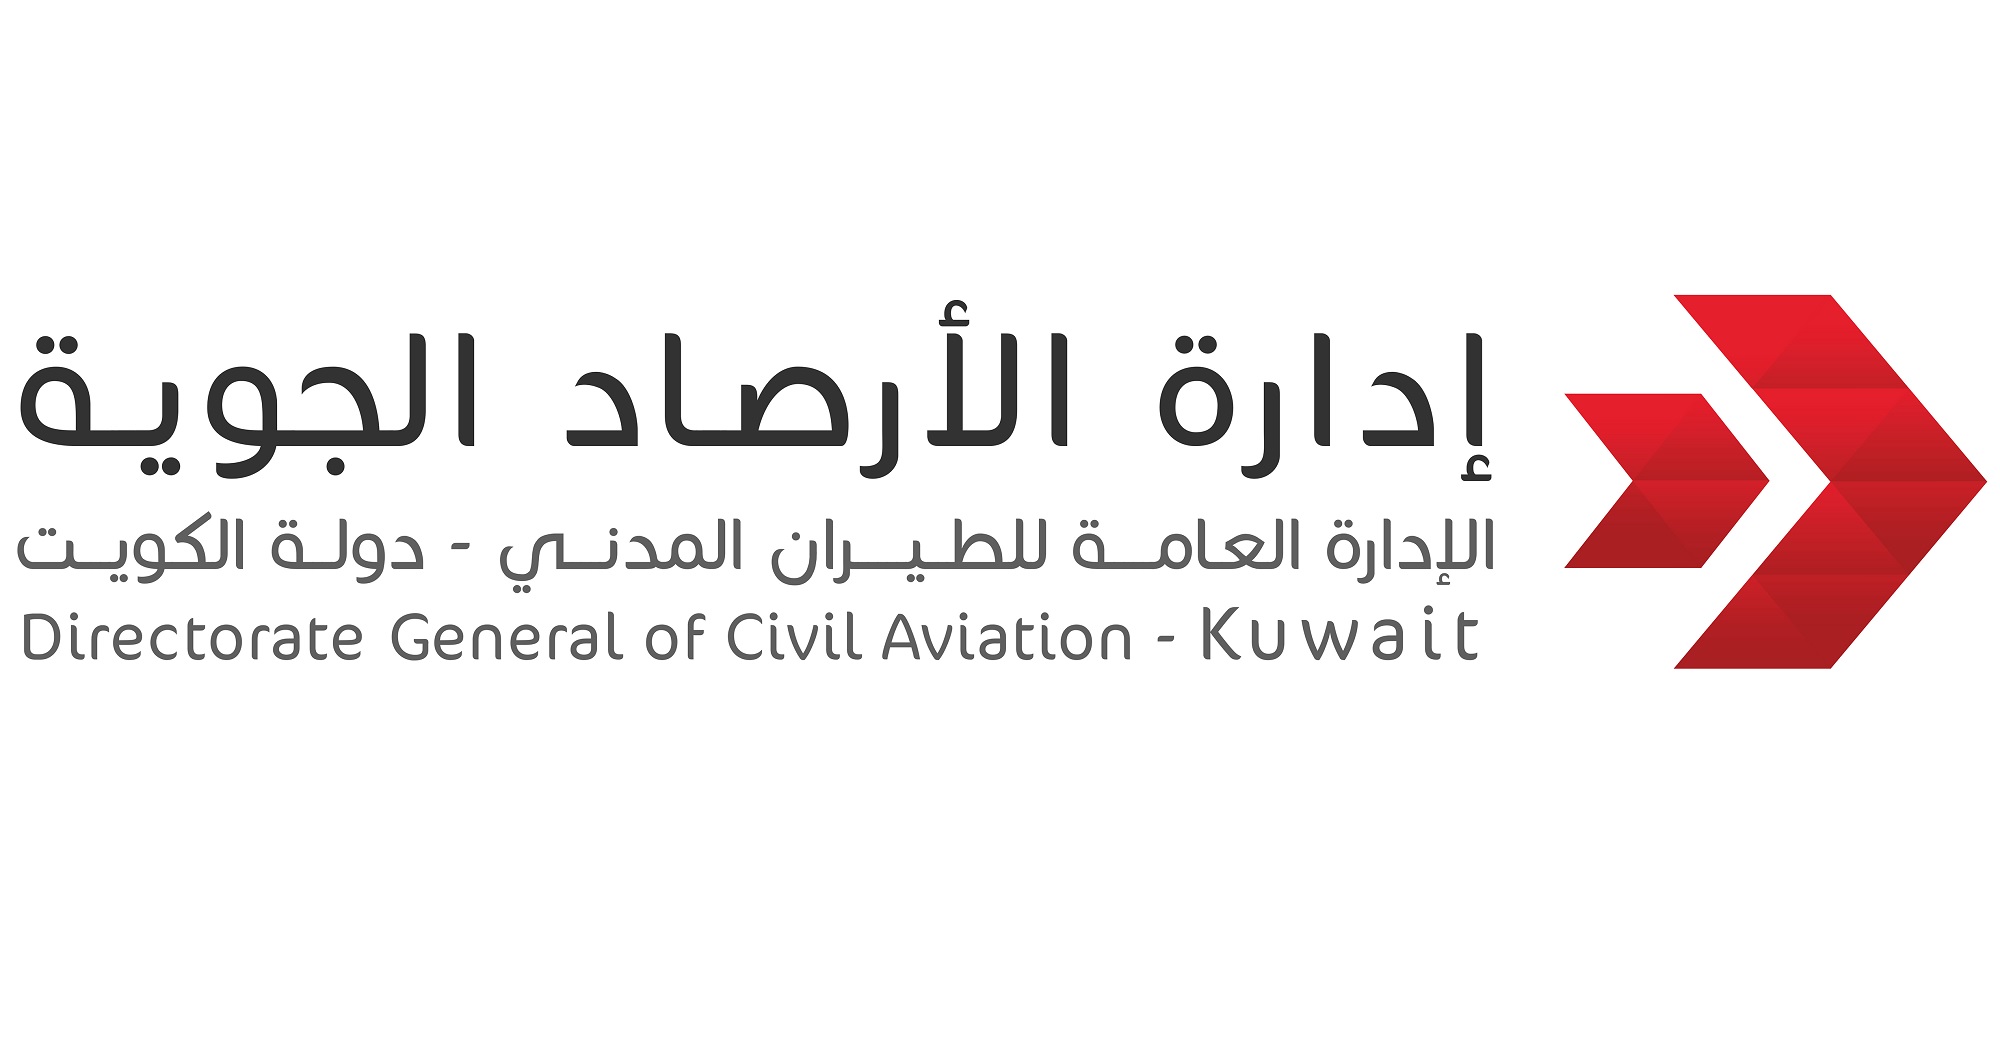 الارصاد الكويتية: درجات الحرارة تخطت اليوم 50 درجة مئوية                                                                                                                                                                                                  